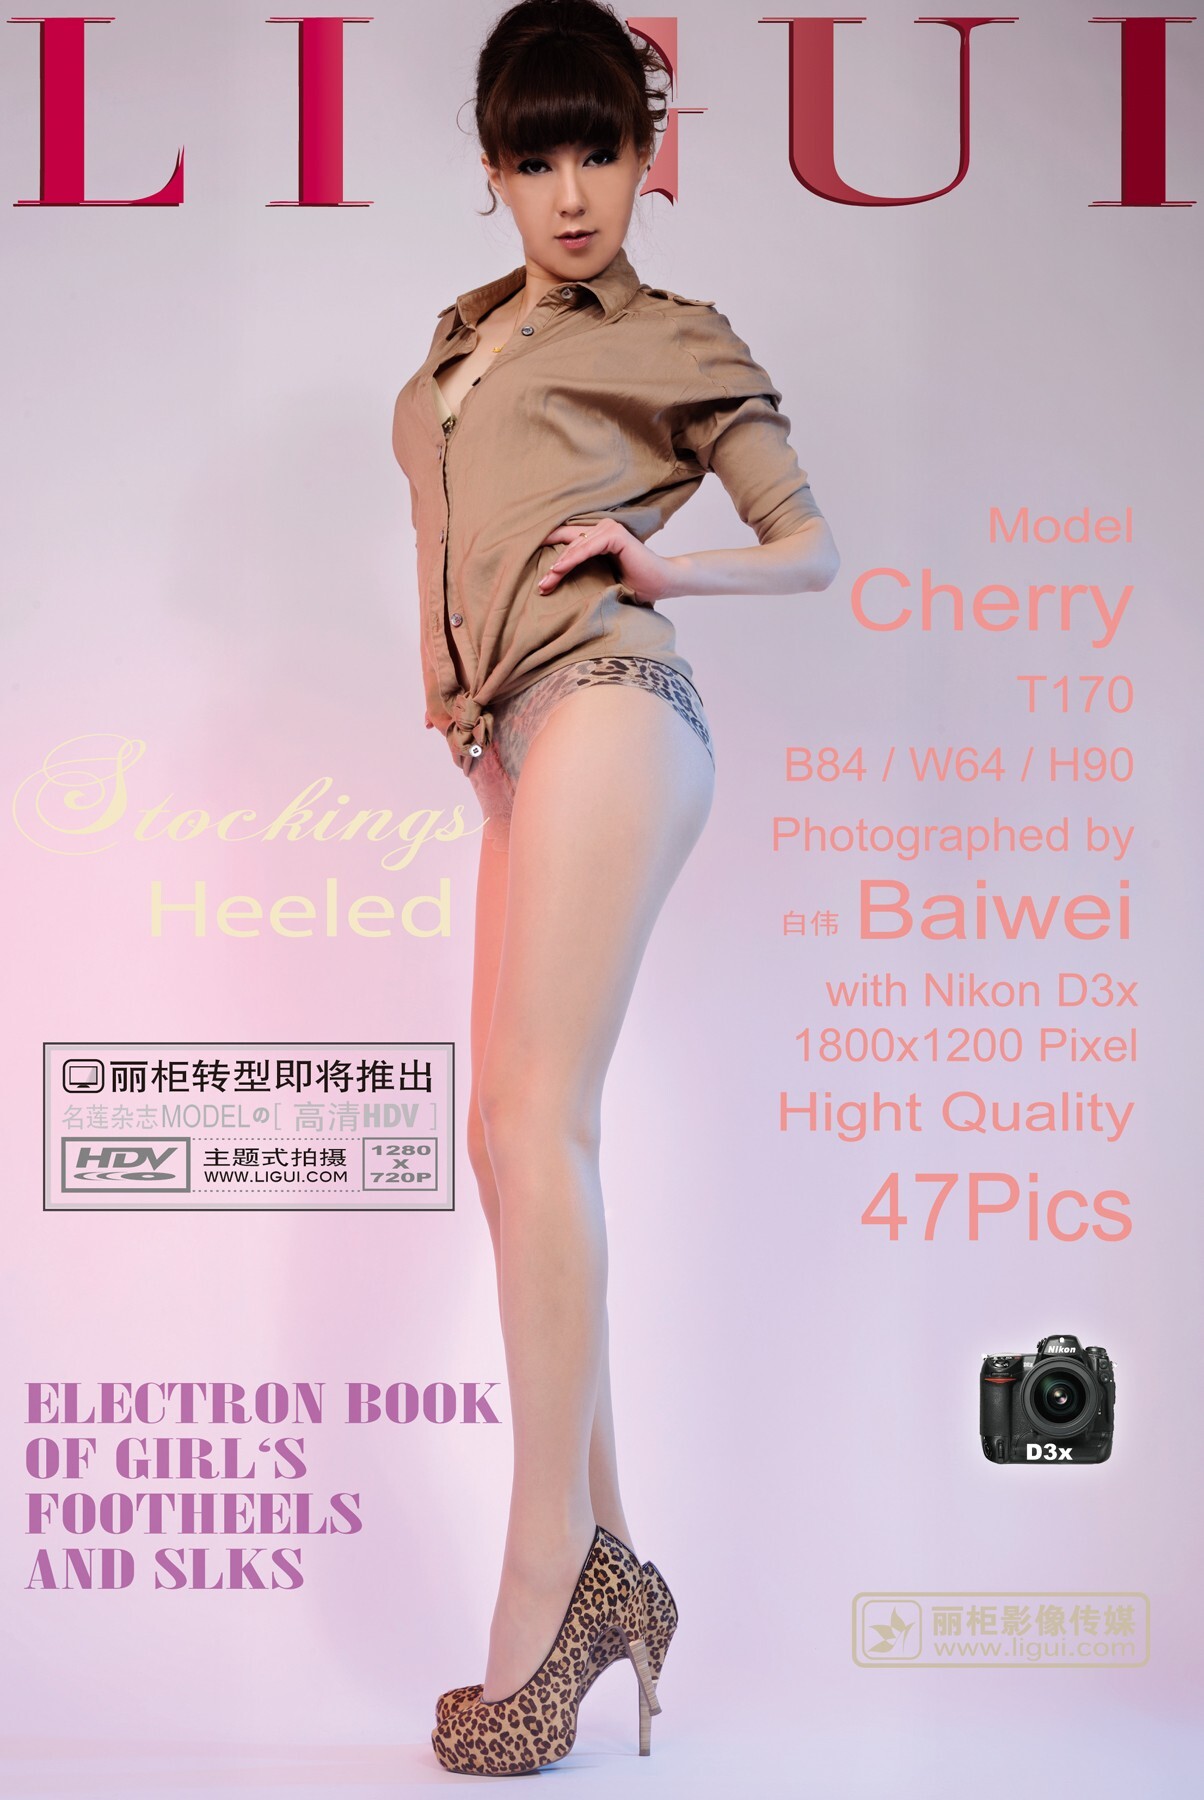 性感肉絲的誘惑 Model Cherry [Ligui]丽柜 20110627